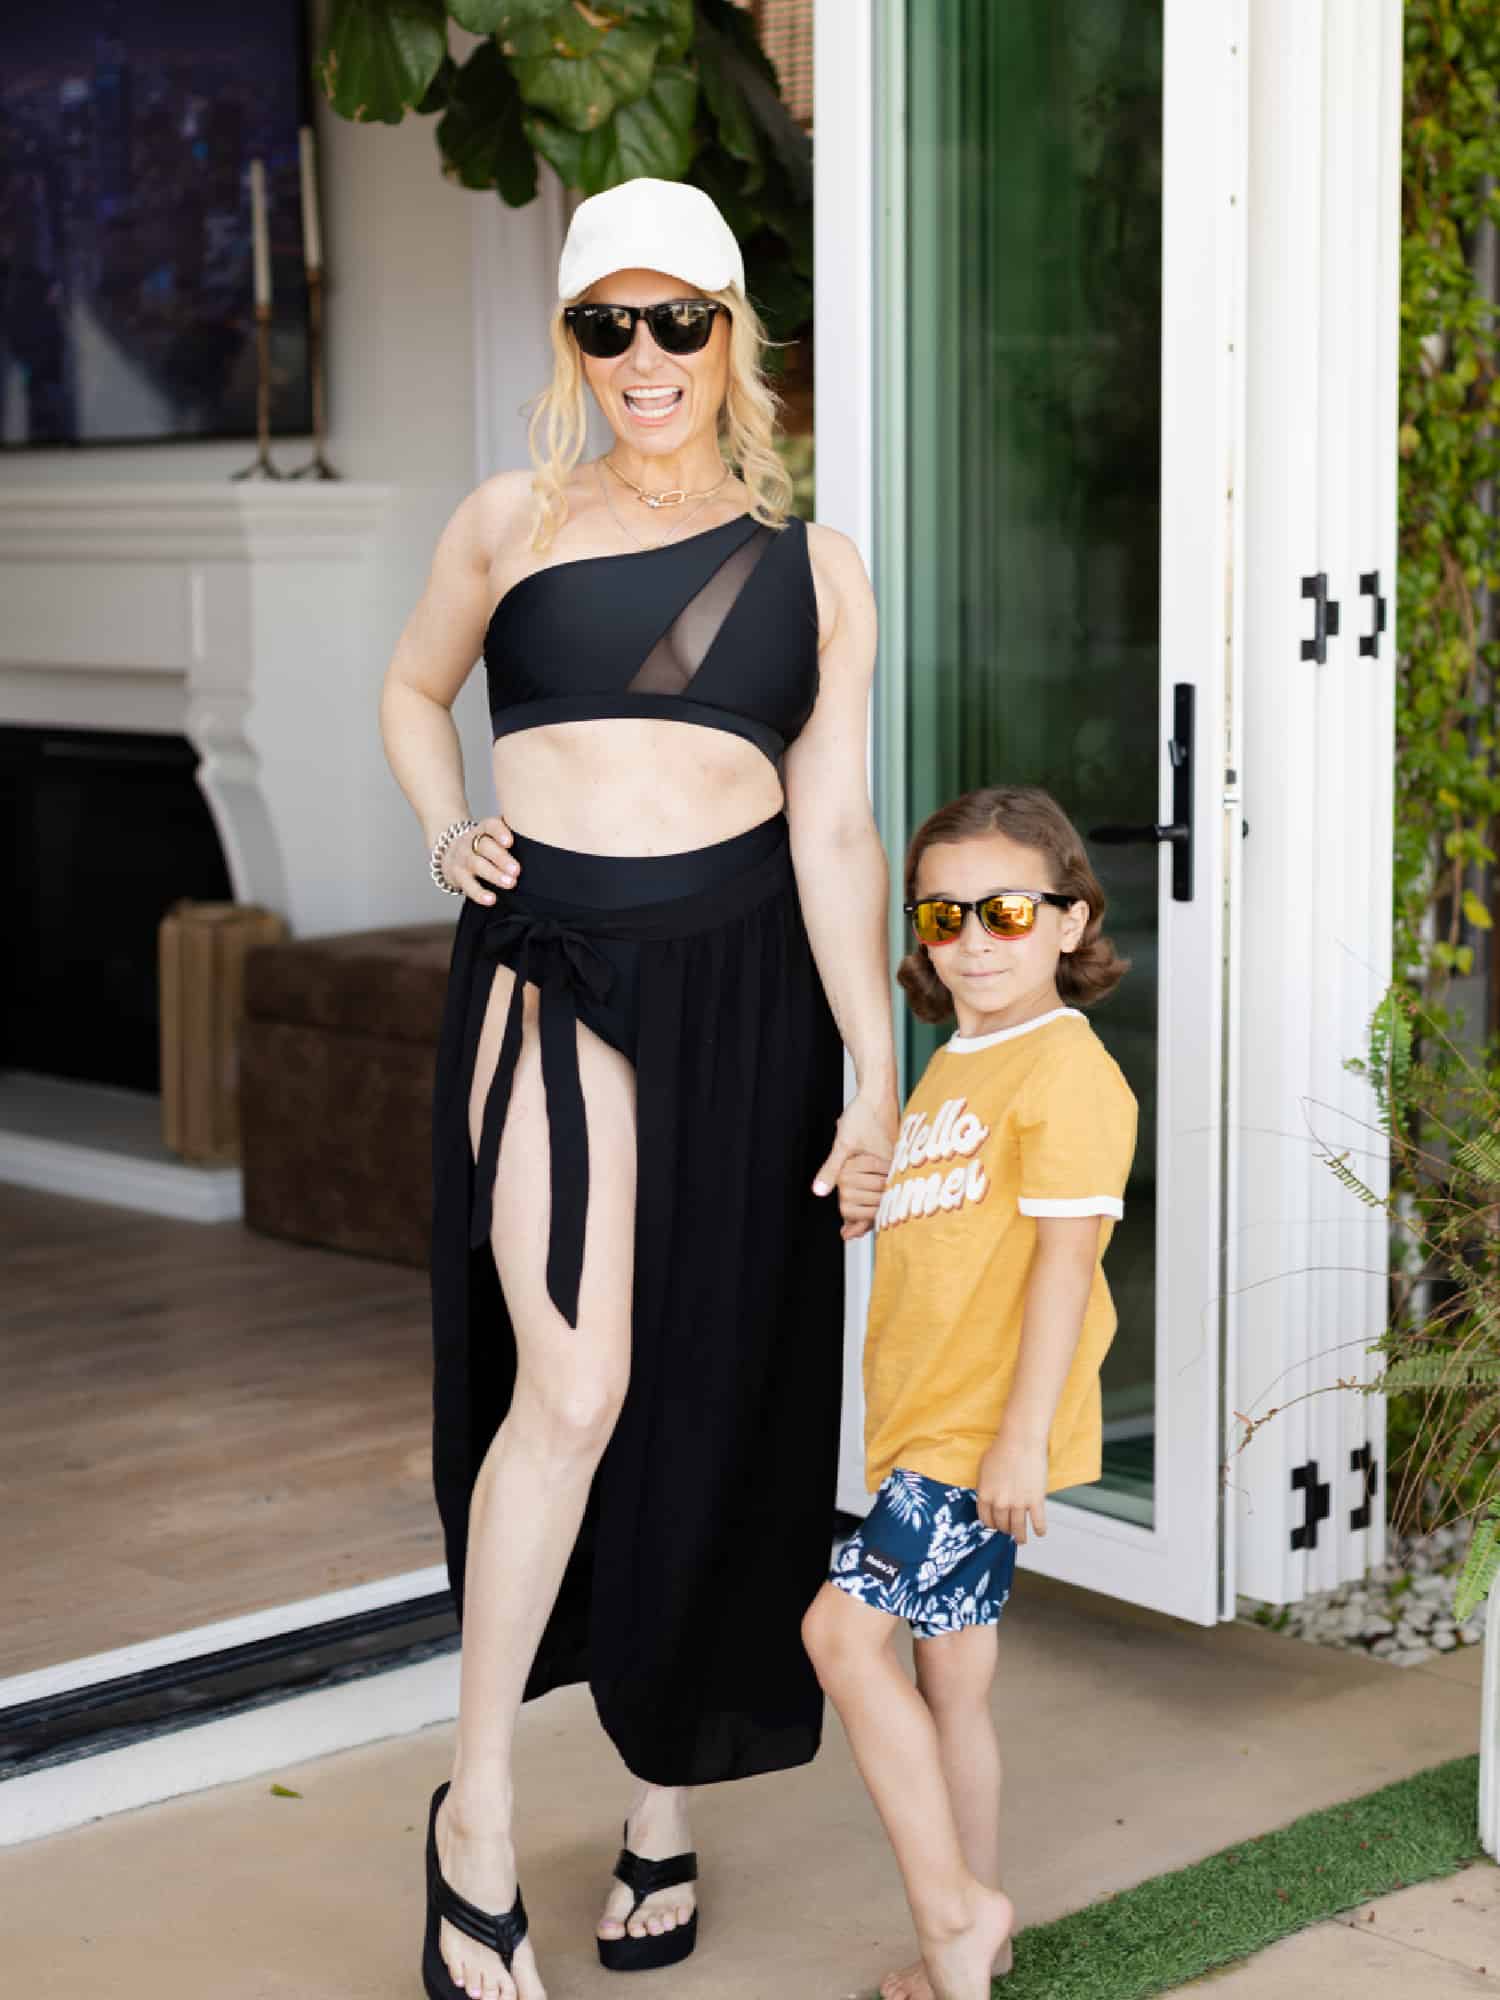 Kohl's Summer Styles: Flattering Swimsuits for Moms - City Girl